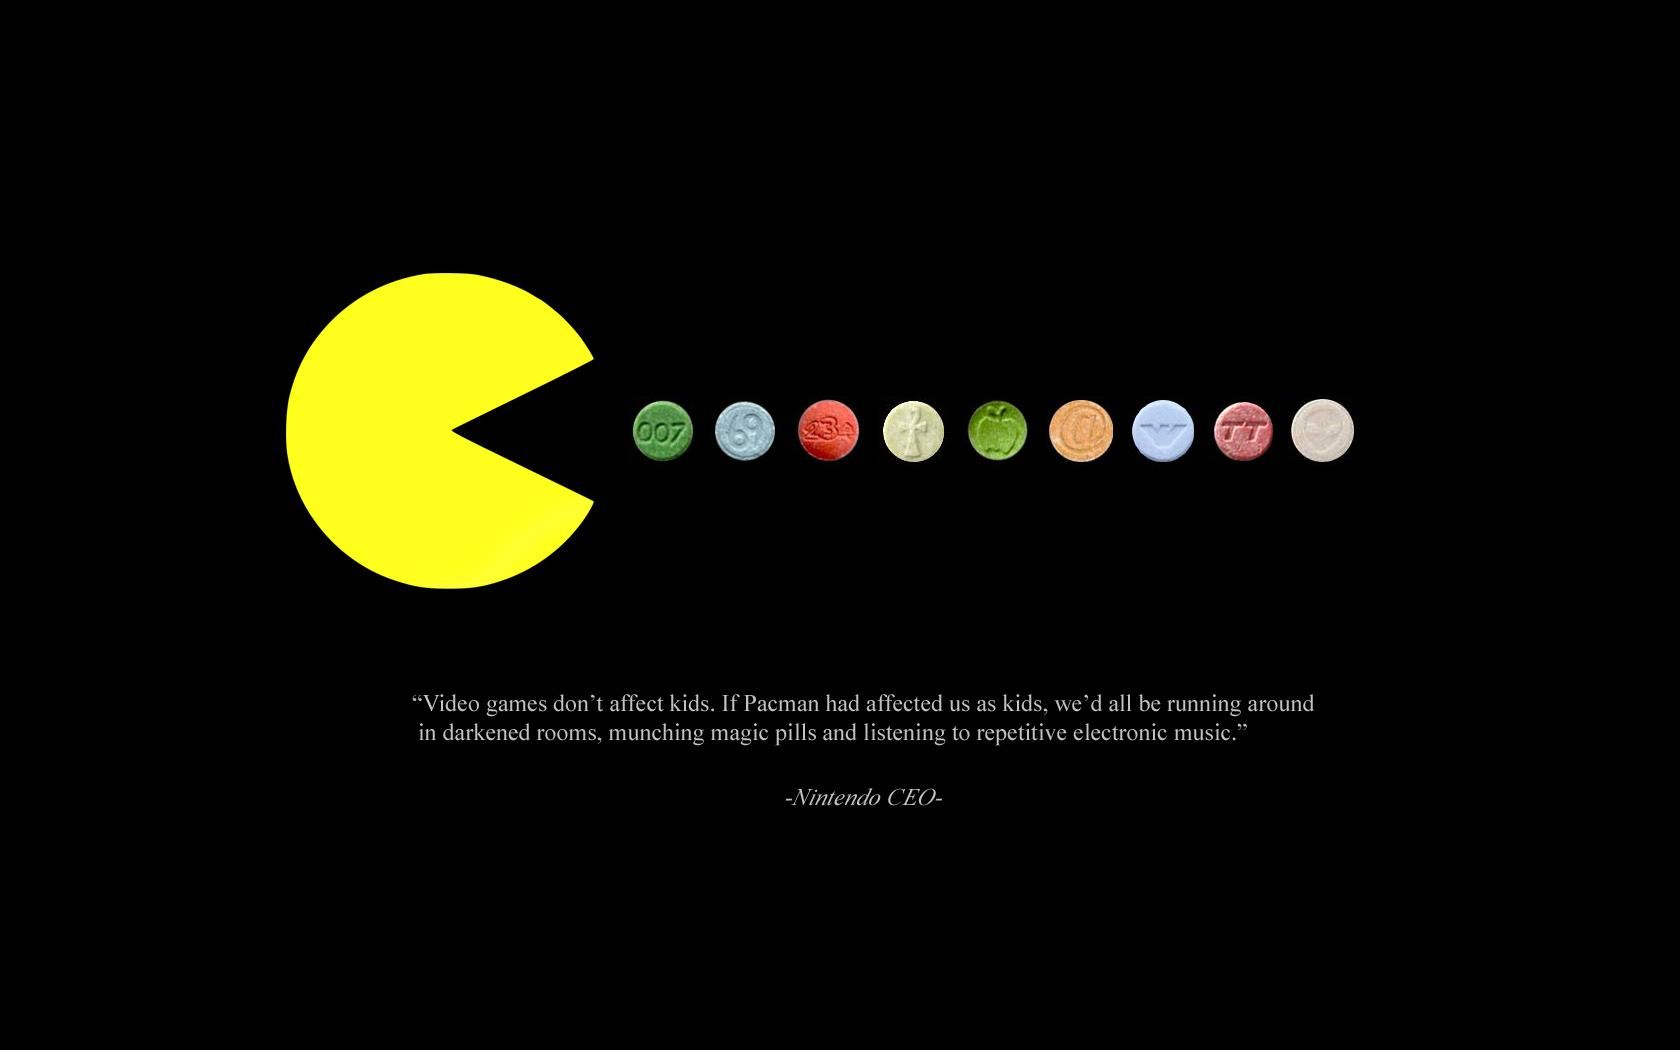 Nintendo Ceo Quote. Best Inspirational Quotes Wallpaper. Цитаты о вдохновении, Шаблоны, Тексты